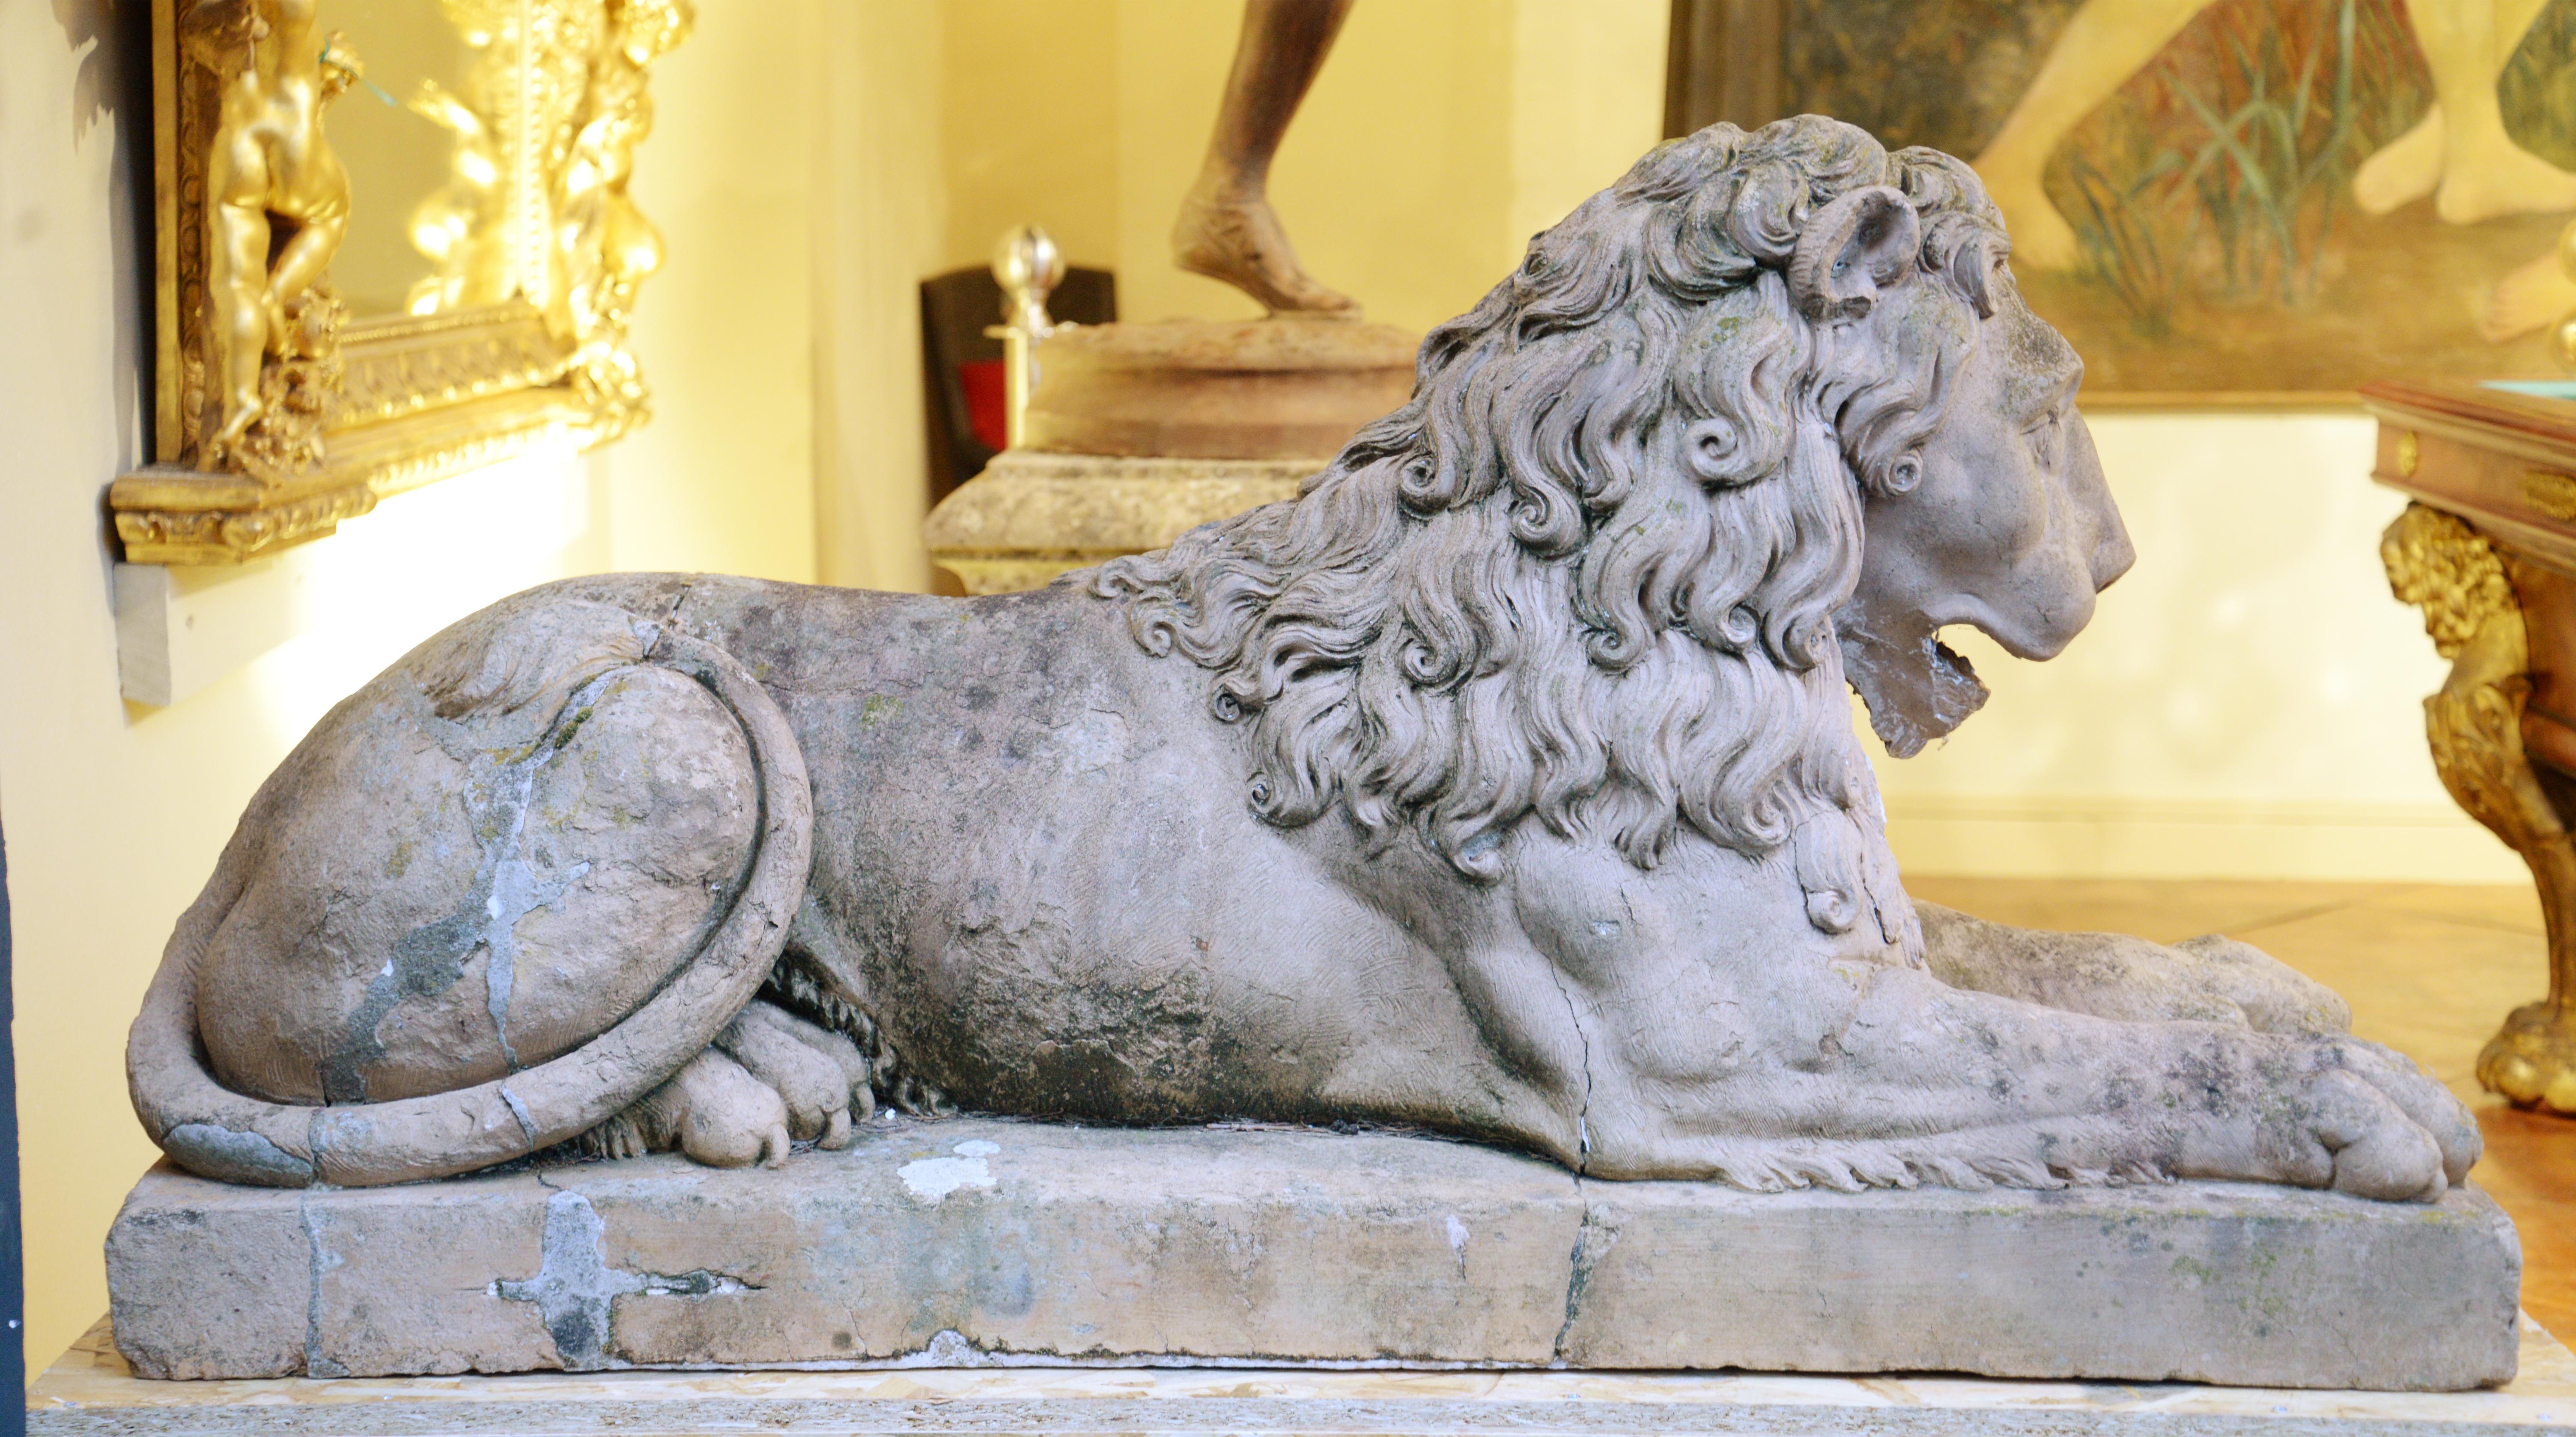 Reposant sur des piédestaux, cette paire de lions en terre cuite a été réalisée au XVIIIe siècle.

Ces lions en terre cuite sont basés sur l'iconographie ancienne et sont inspirés des XVIIe et XVIIIe siècles. Le lion couché est l'une des